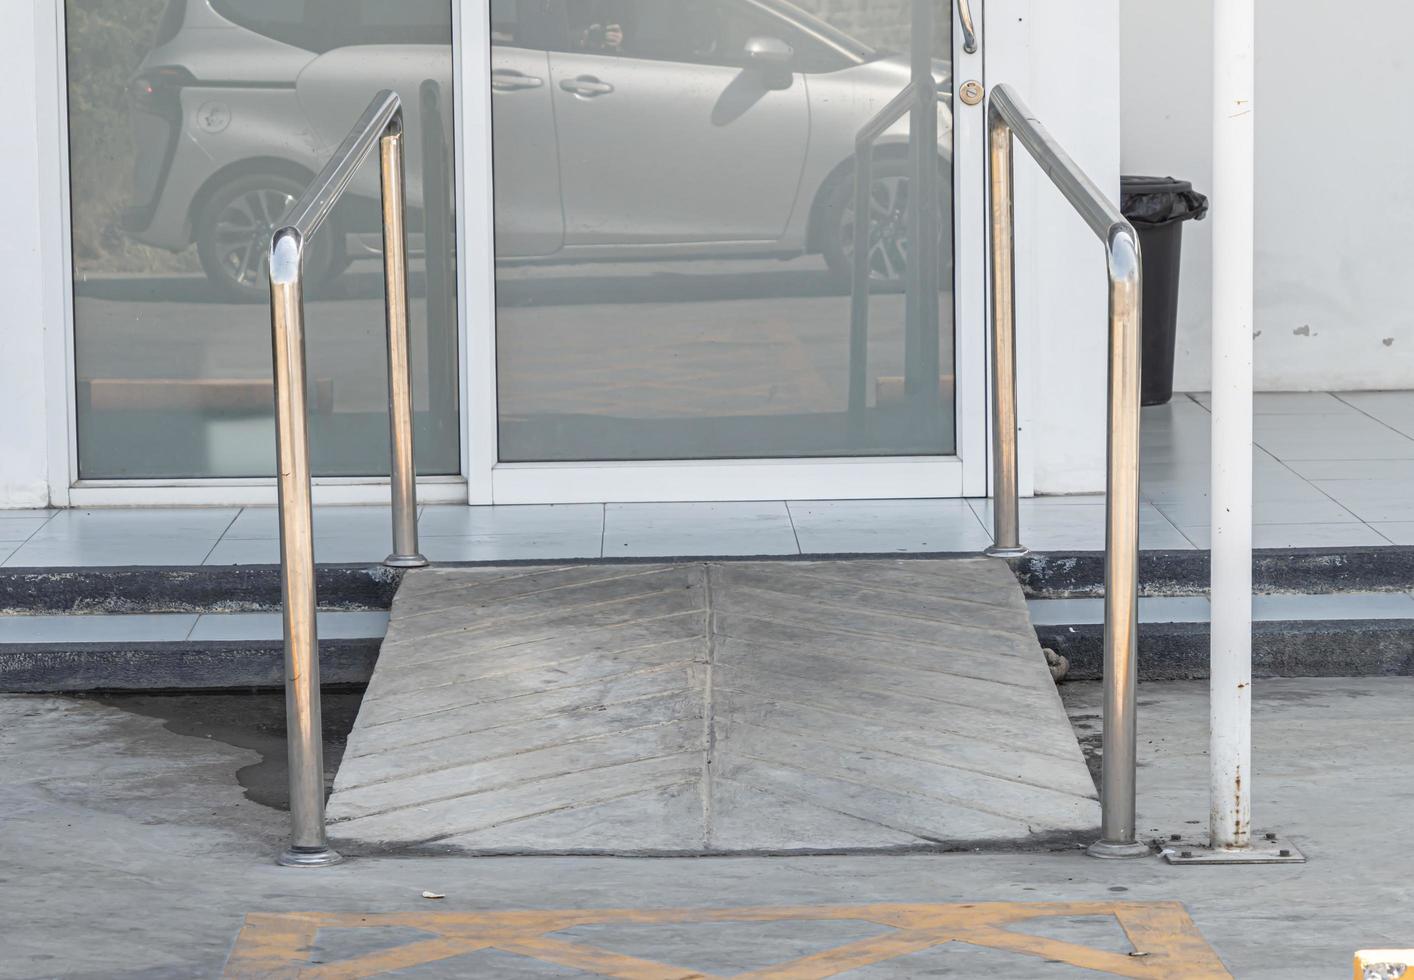 sendero de entrada al edificio con rampa para personas mayores o personas discapacitadas que no pueden ayudarse a sí mismas en silla de ruedas. foto